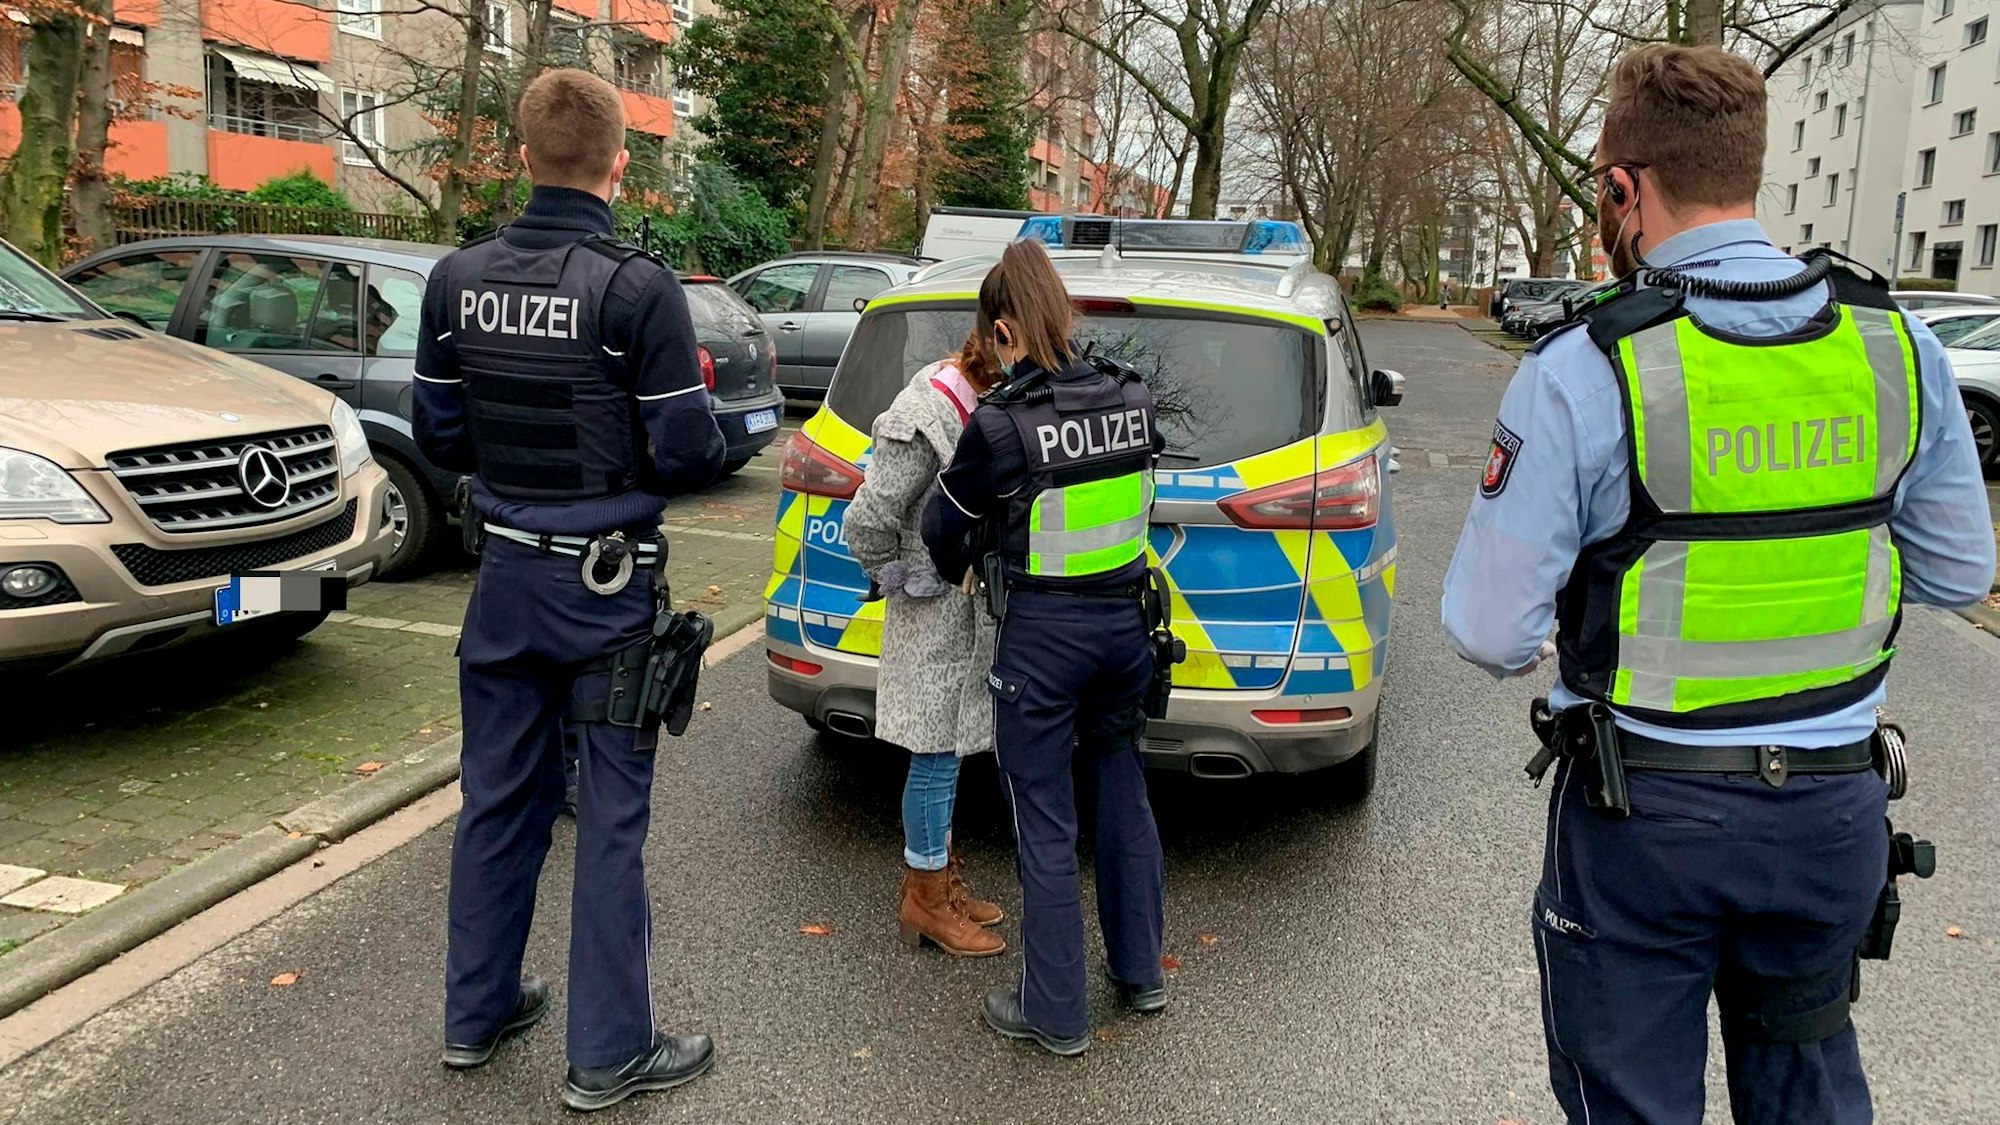 Eine Polizistin nimmt eine Frau fest, zwei Polizisten stehen daneben.